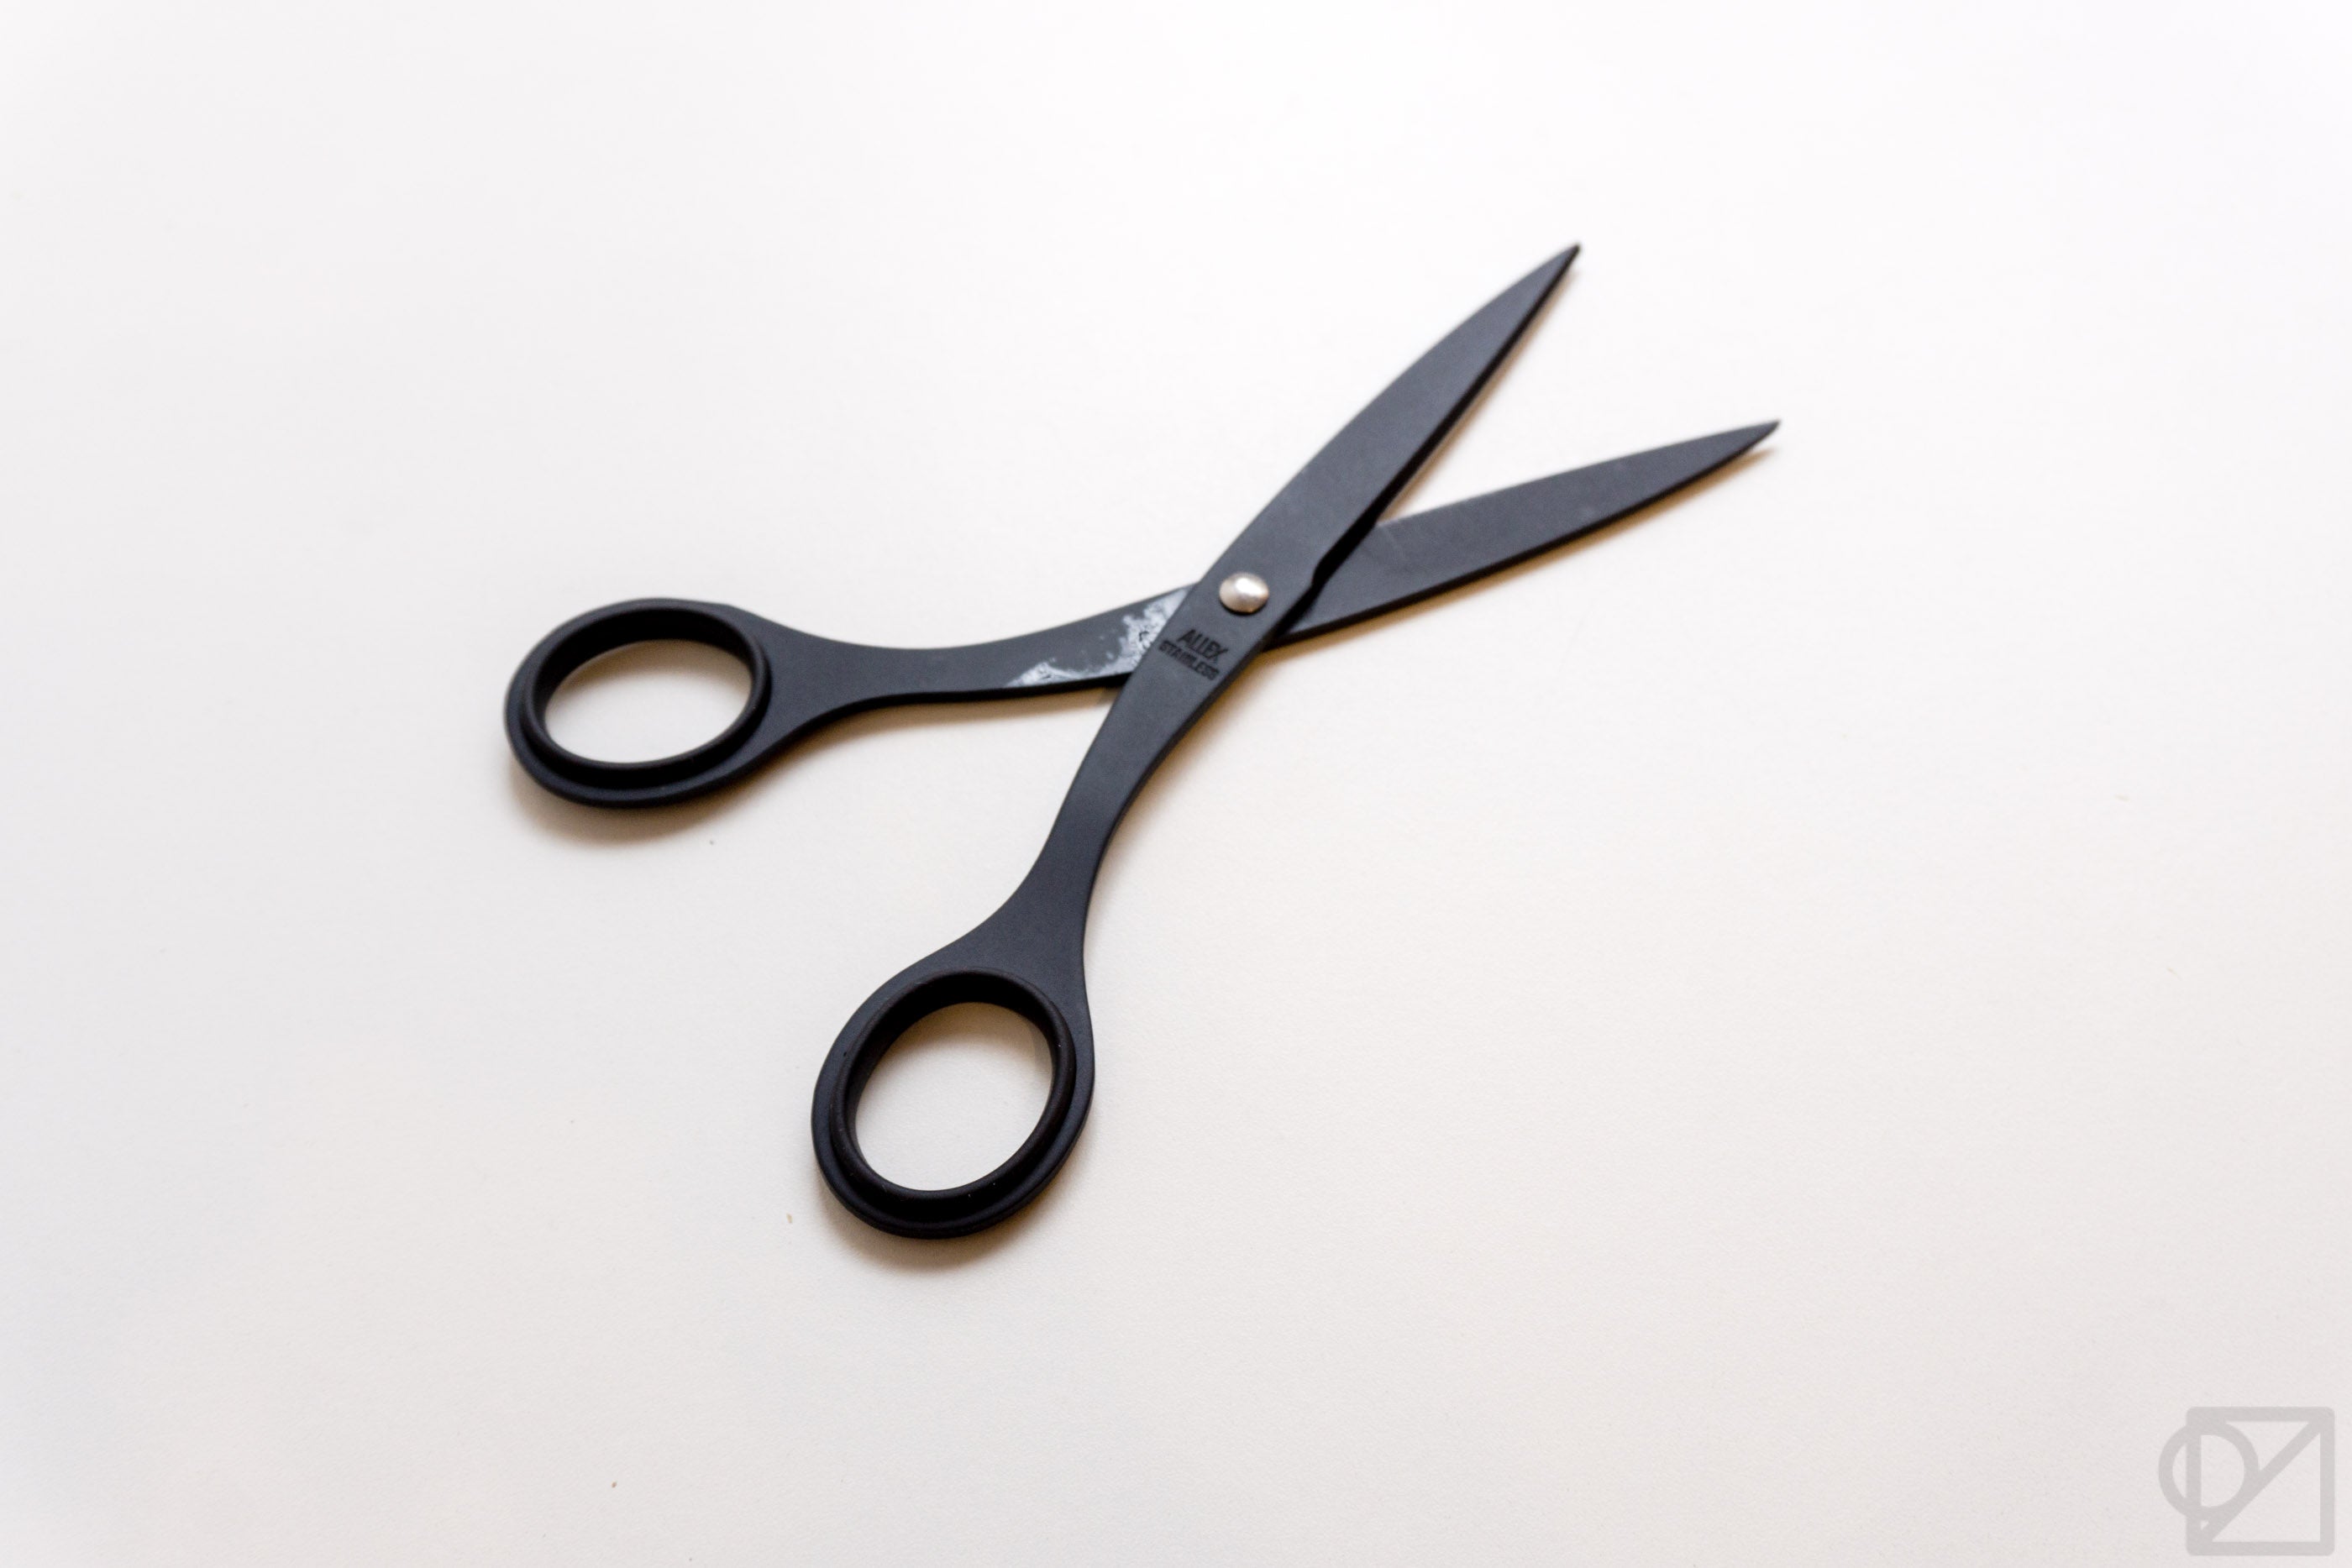 Allex All-Purpose Stainless Steel Desk Scissors — The Gentleman Stationer